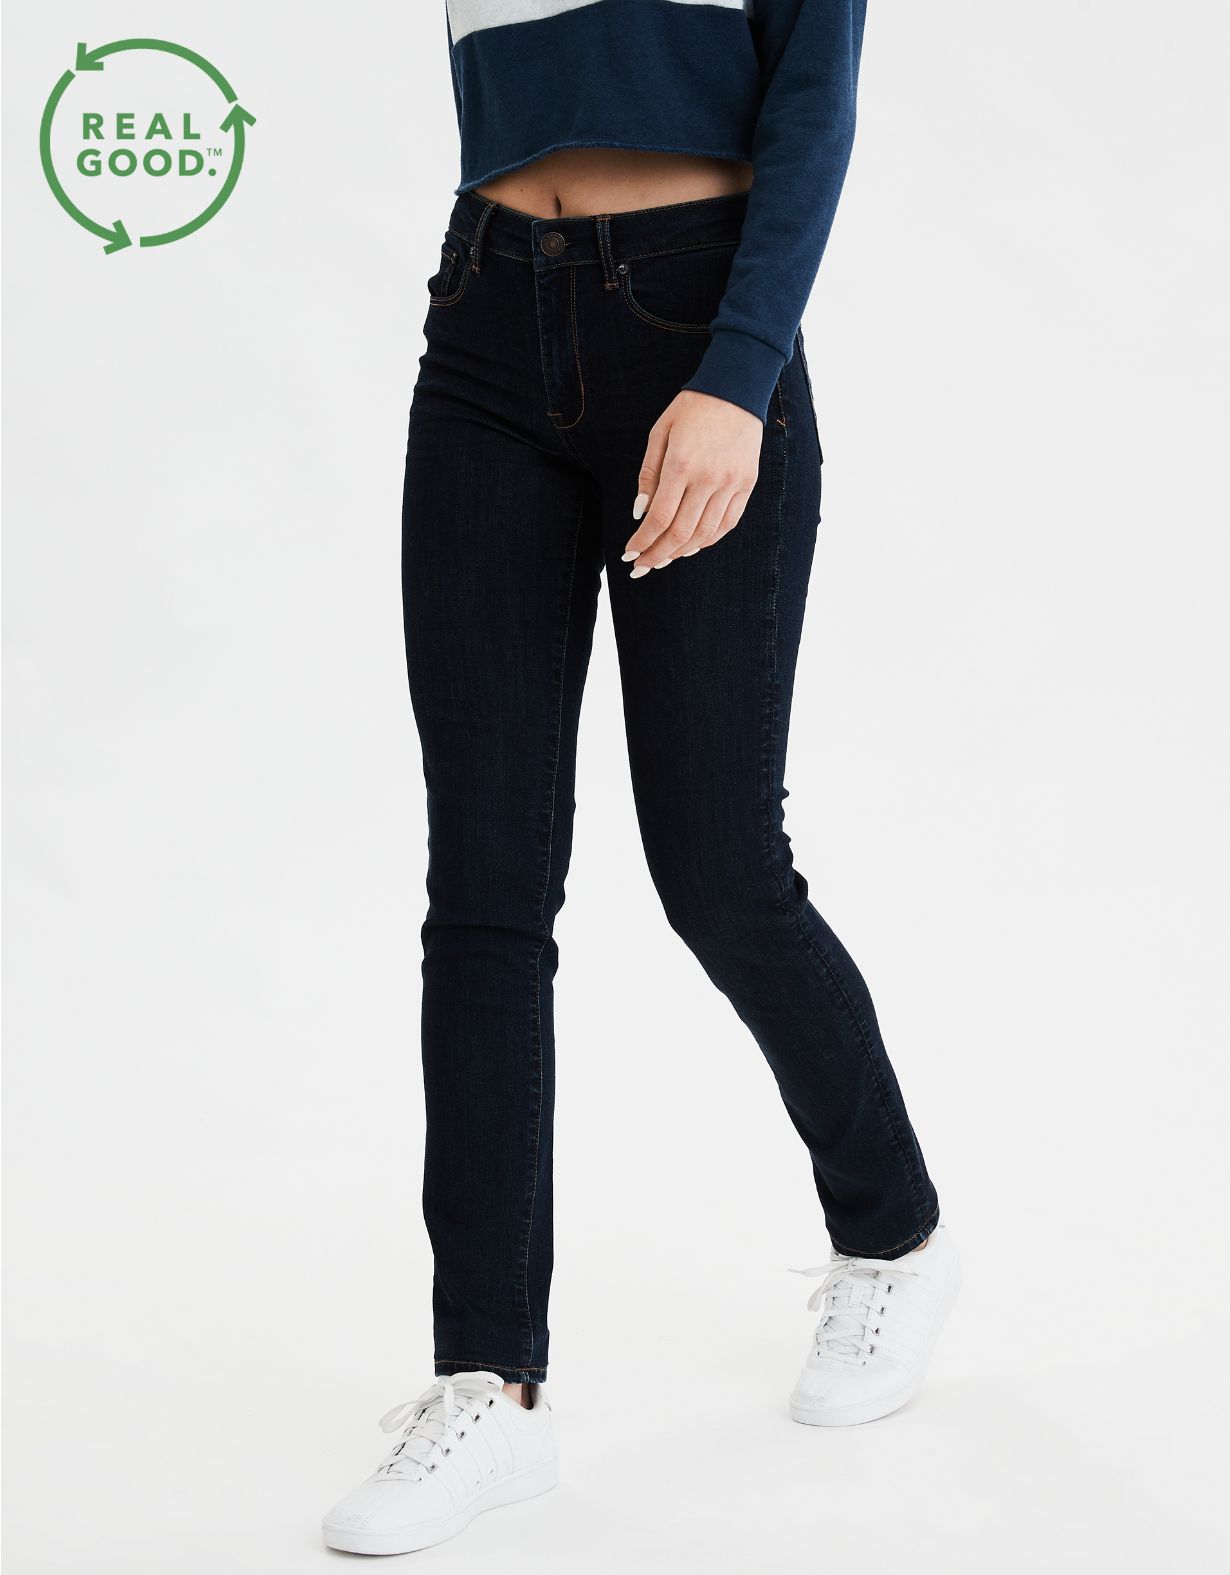 AE High-Waisted Skinny Jean